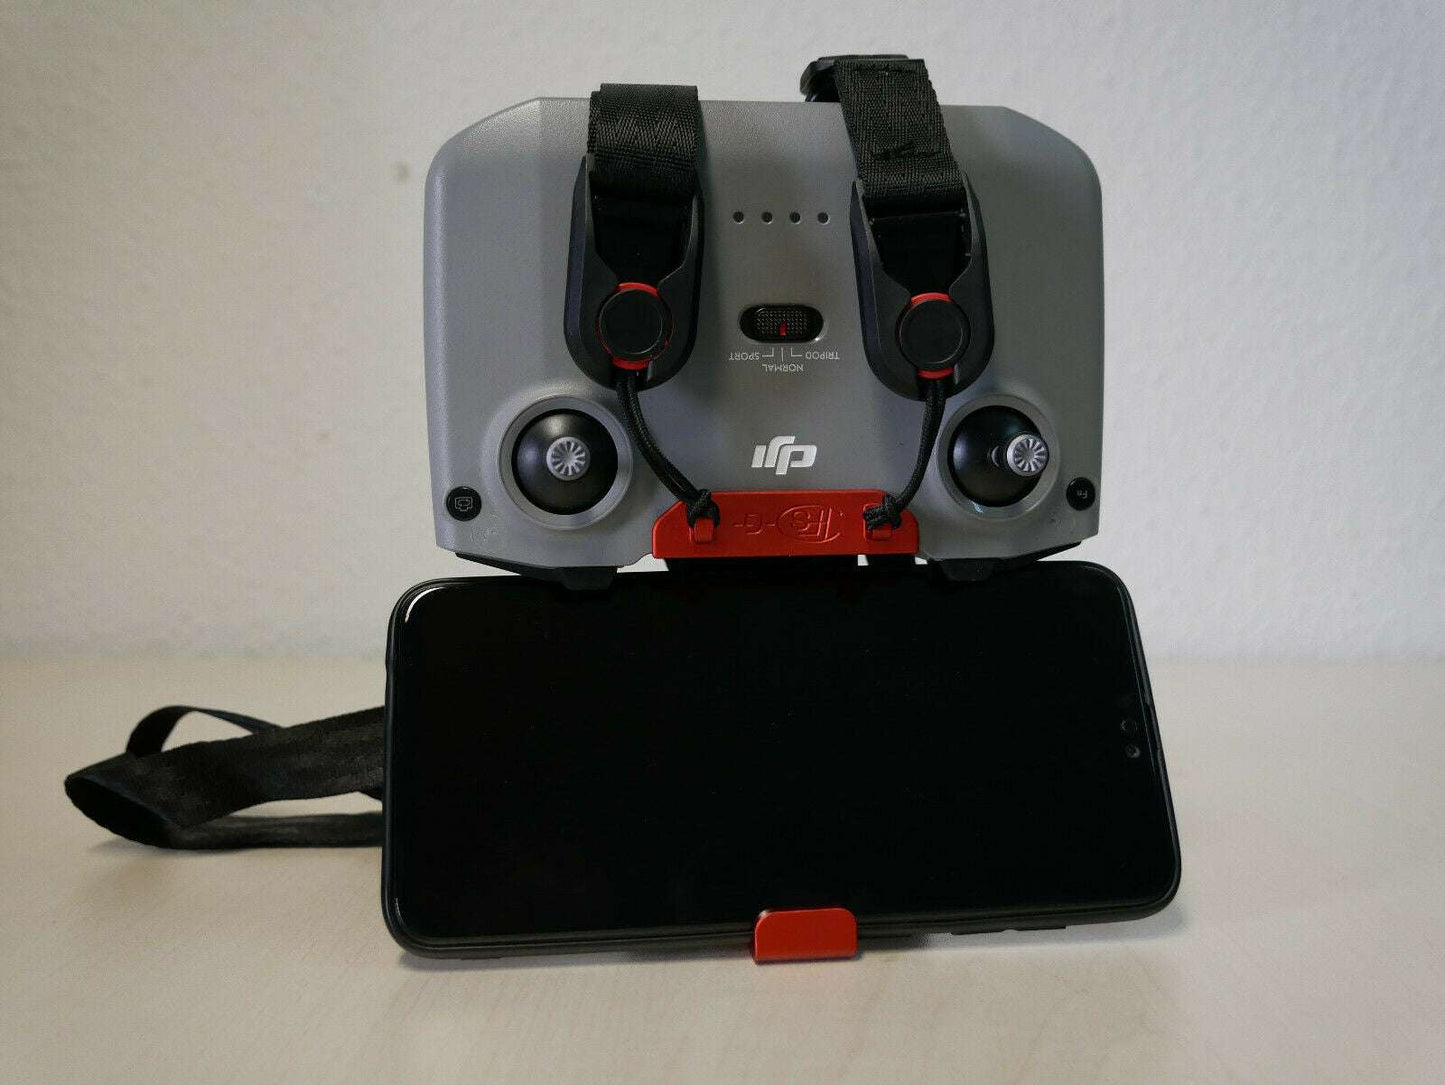 Controller mit Handyhalter in rot in der Position, um Videos auf dem  6 Zoll Handy anzuschauen